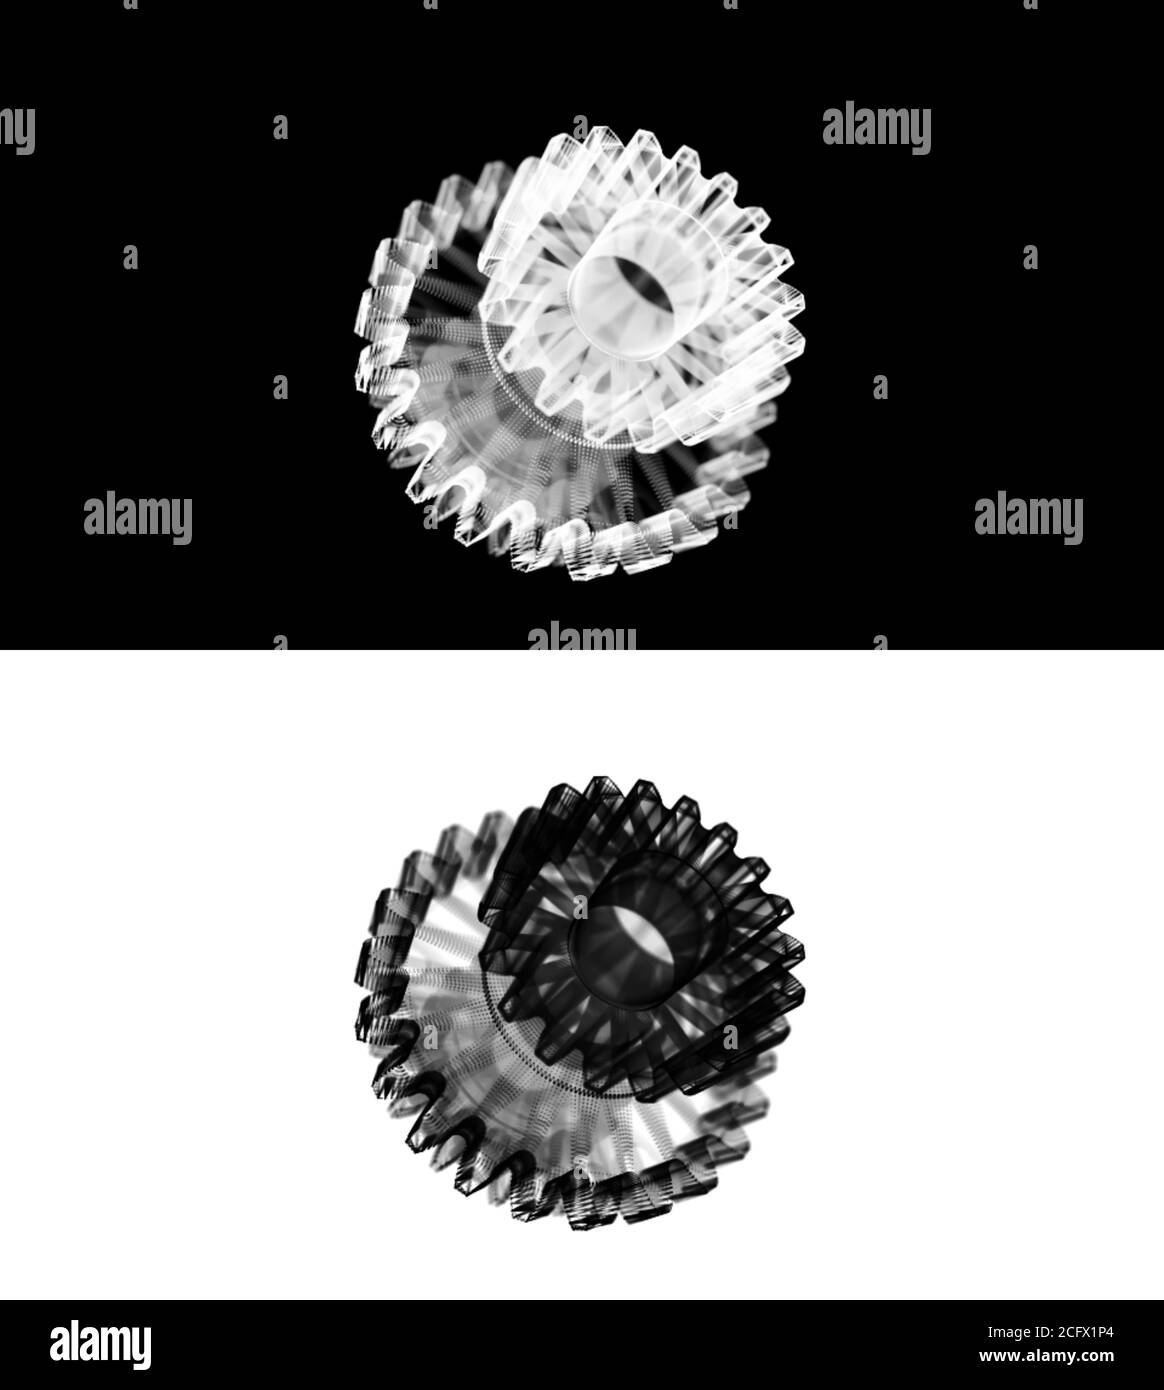 Spinning gears fotografías e imágenes de alta resolución - Página 12 - Alamy